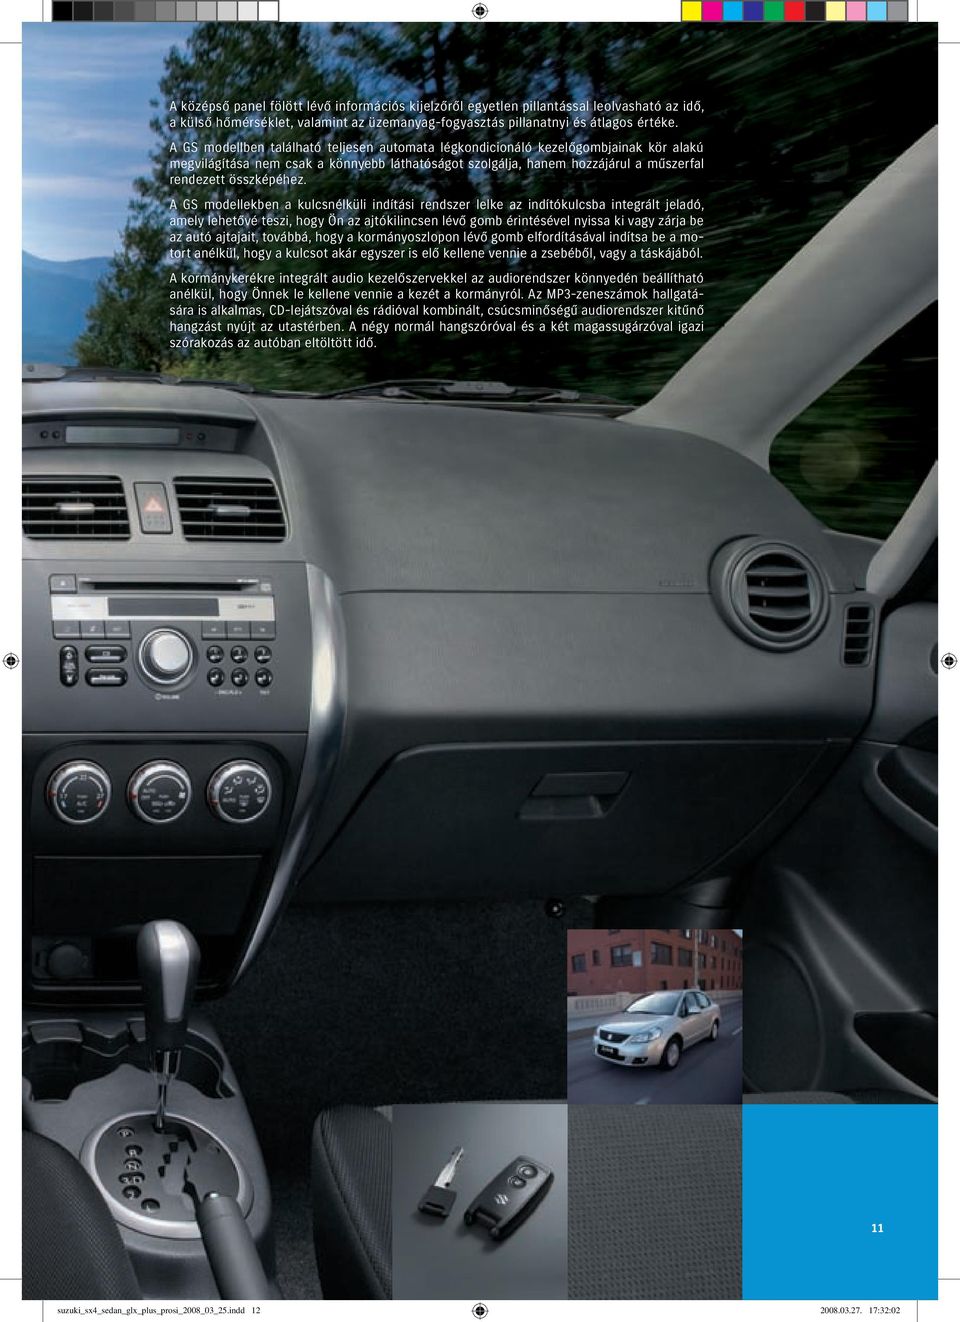 A GS modellekben a kulcsnélküli indítási rendszer lelke az indítókulcsba integrált jeladó, amely lehetővé teszi, hogy Ön az ajtókilincsen lévő gomb érintésével nyissa ki vagy zárja be az autó